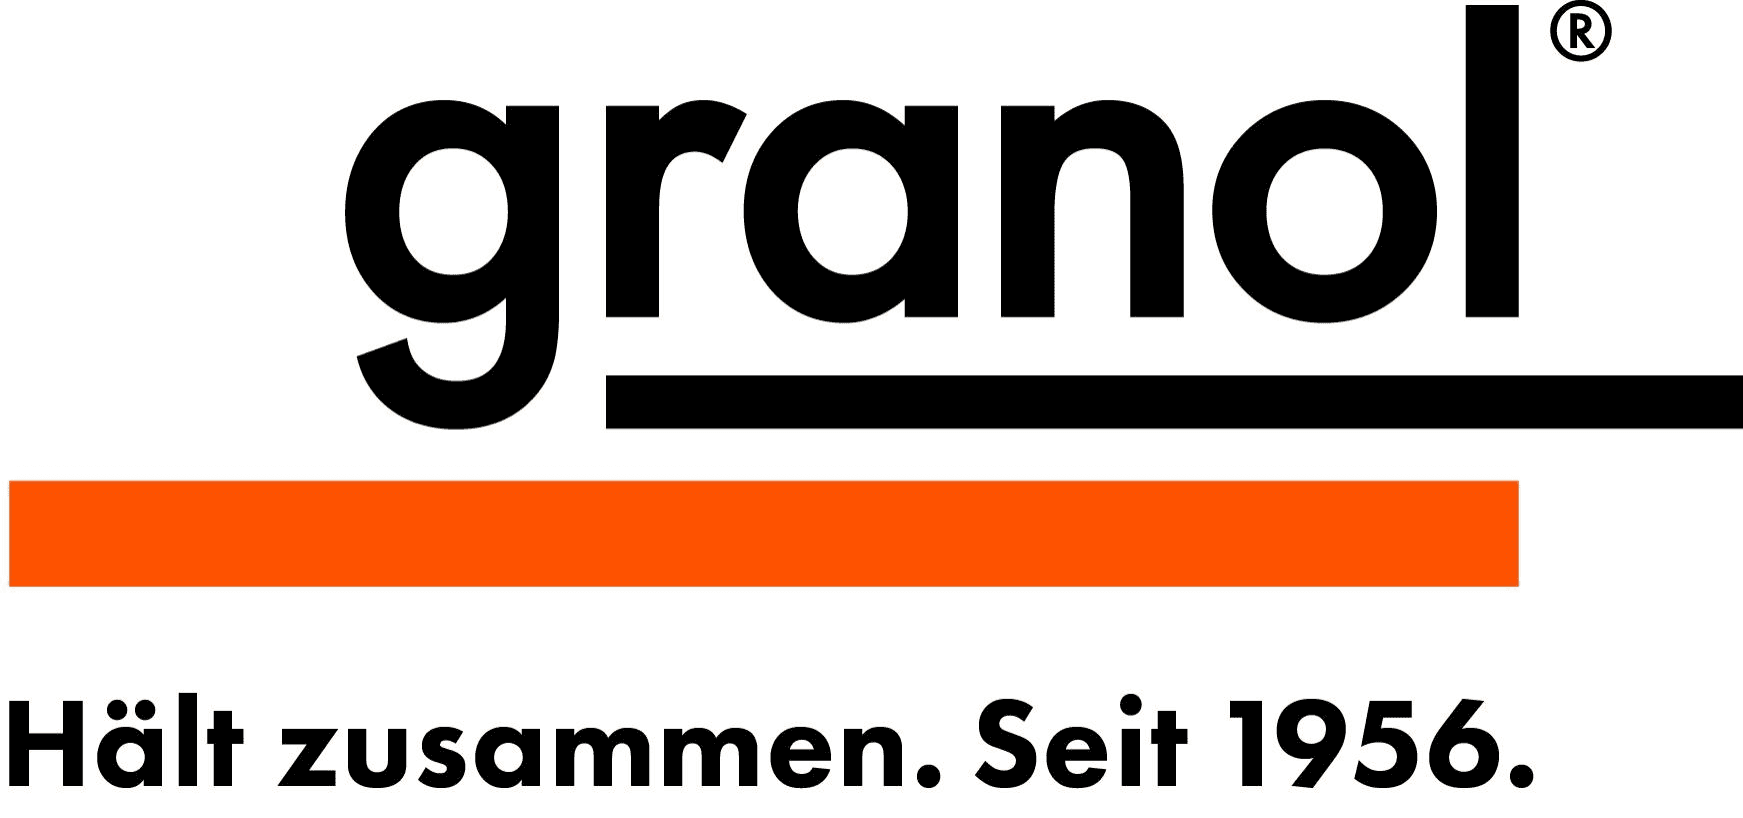 Granol AG